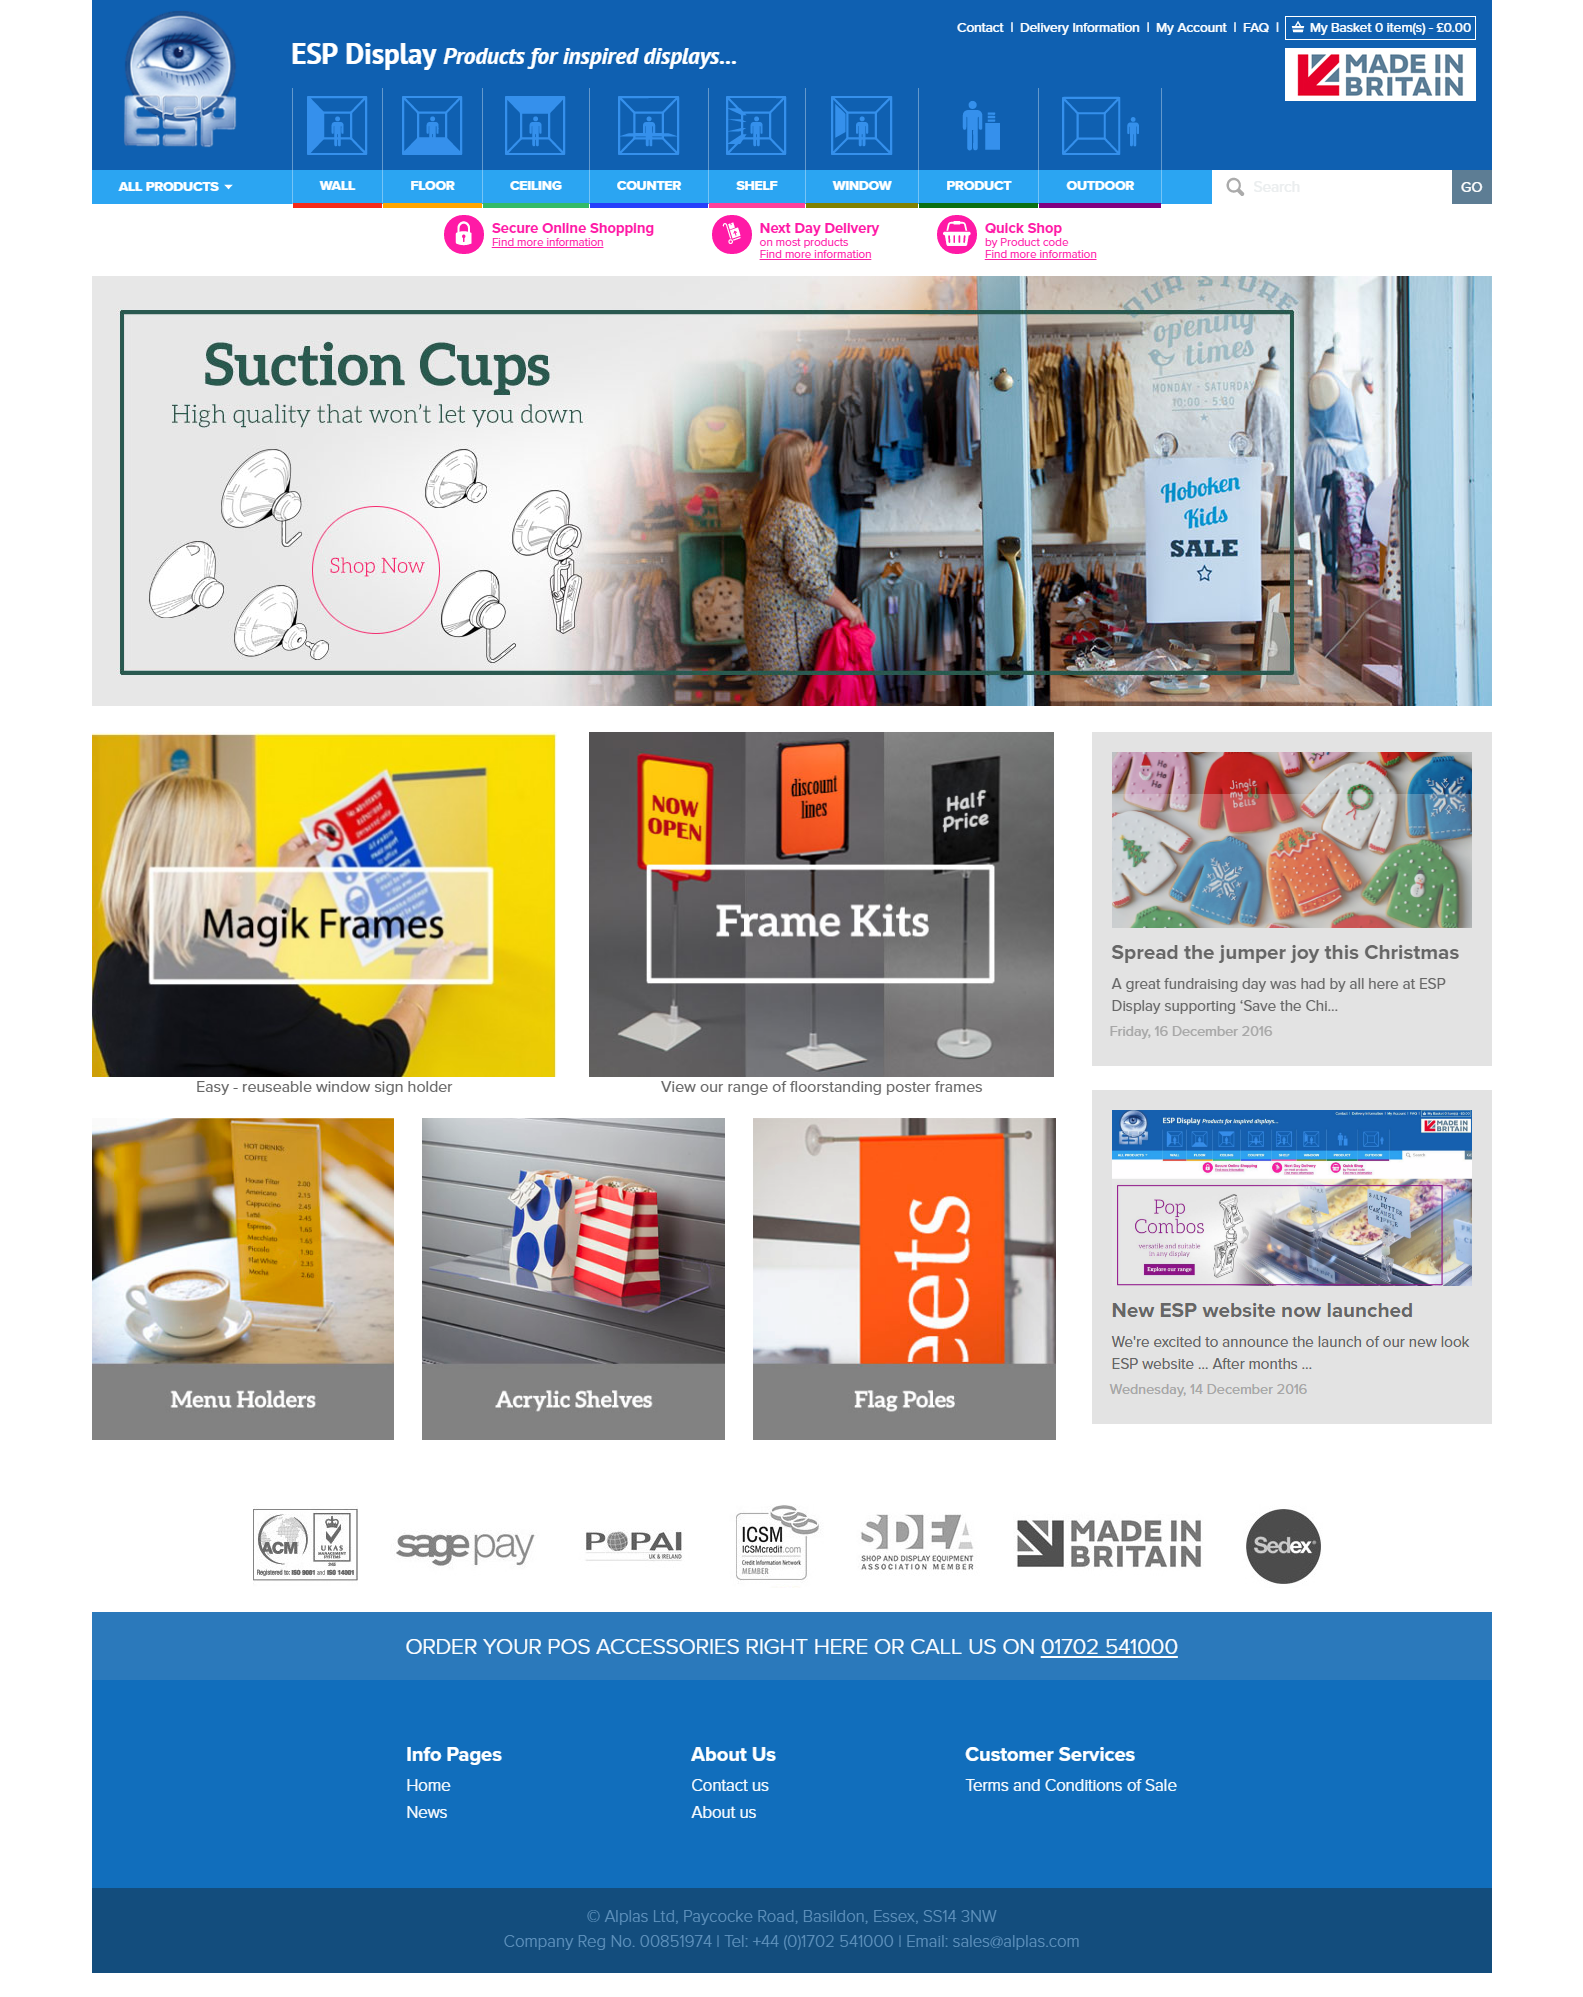 ESP Display Homepage